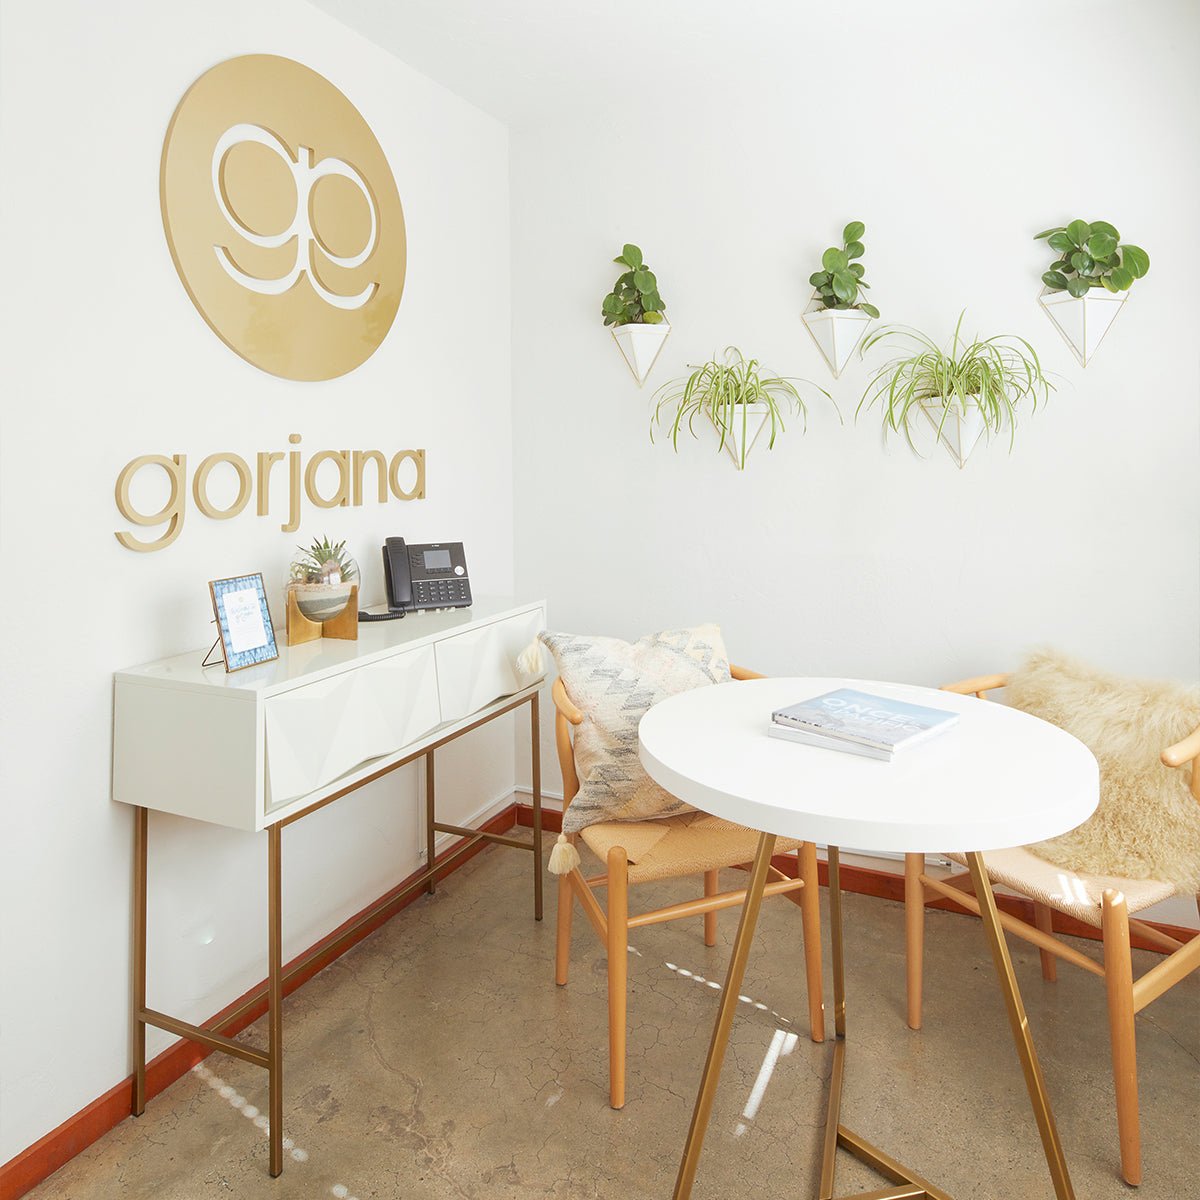 interior image of the gorjana studio in Laguna Beach.